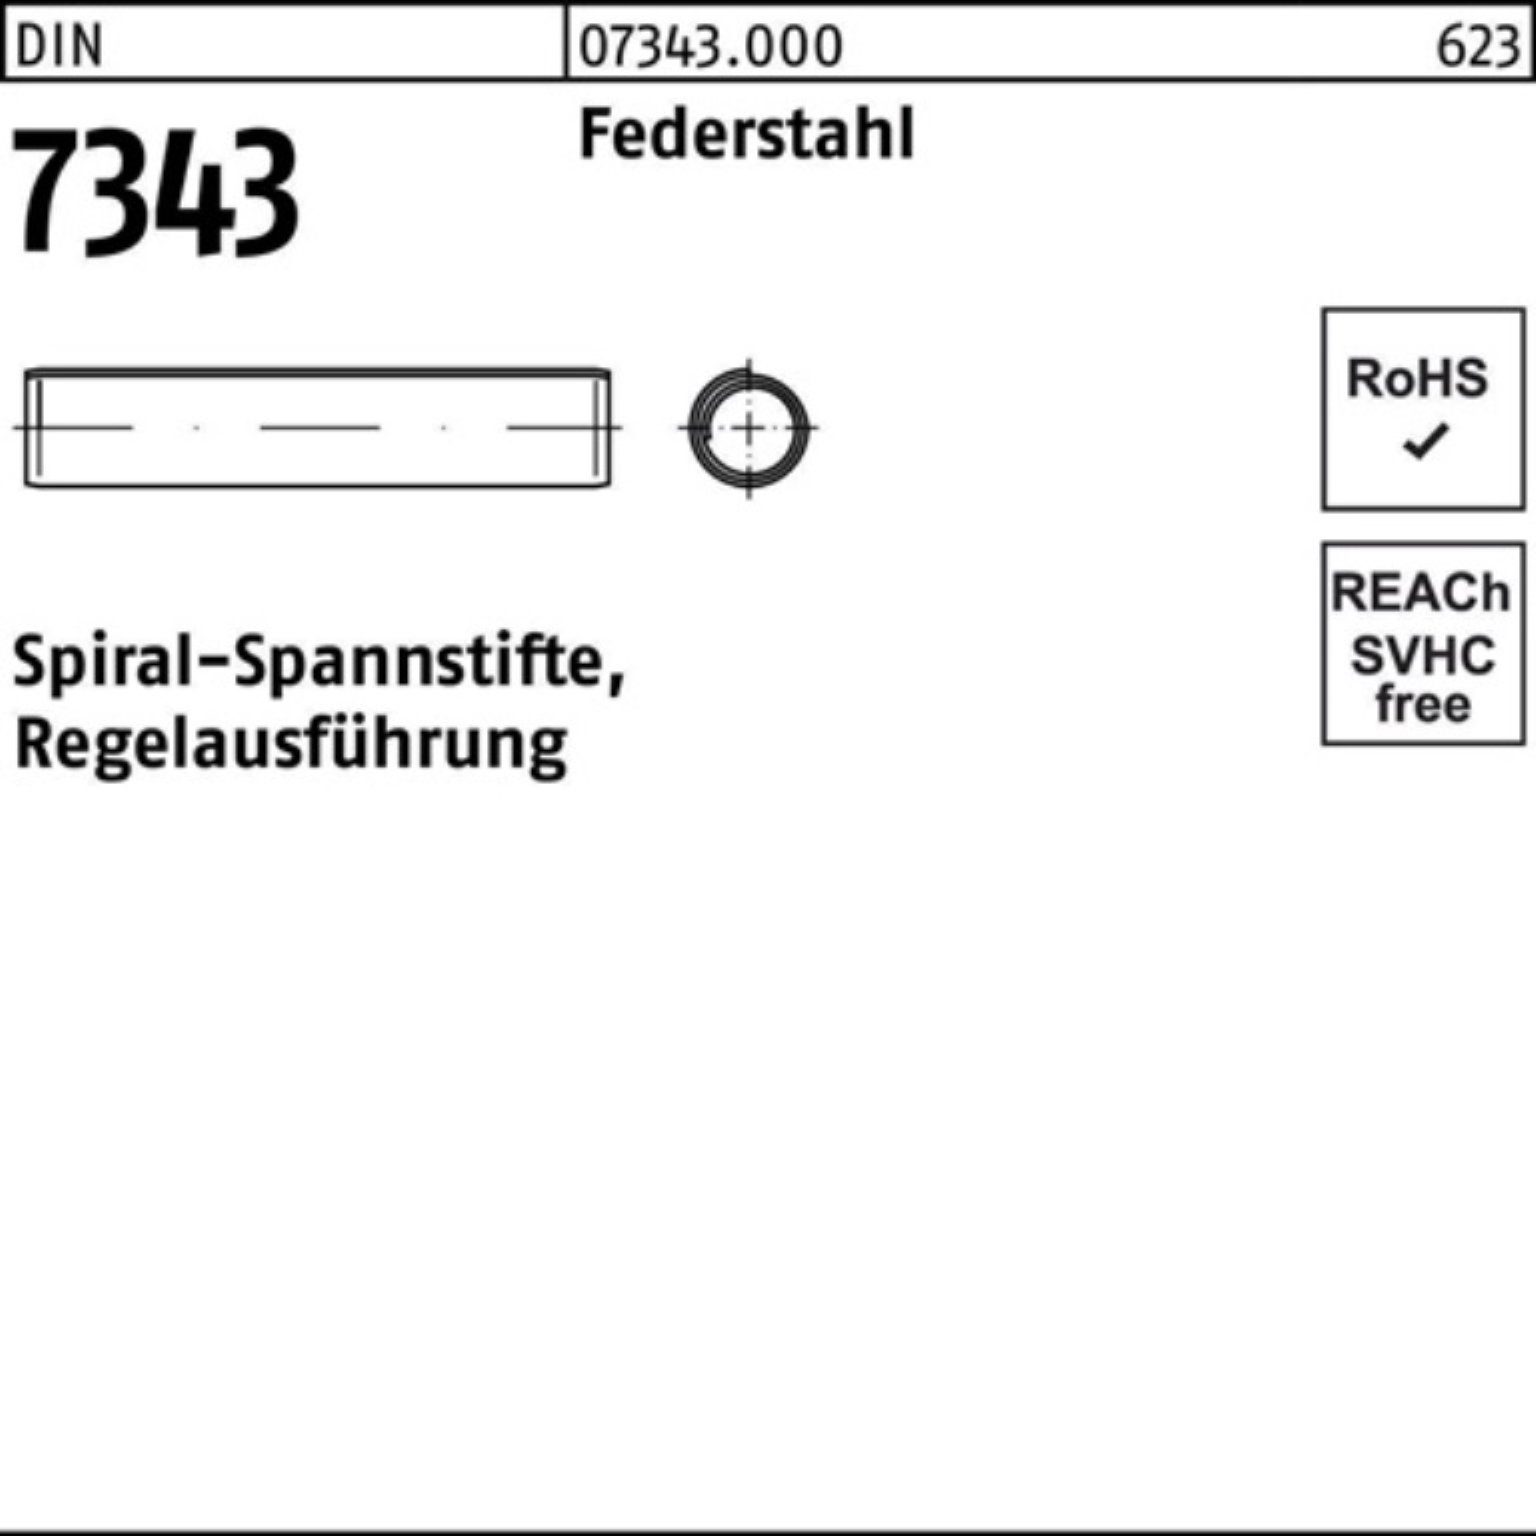 Reyher Spannstift 1000er Regela 10 Spiralspannstift 8750 DIN Pack Federstahl 3x 7343/ISO